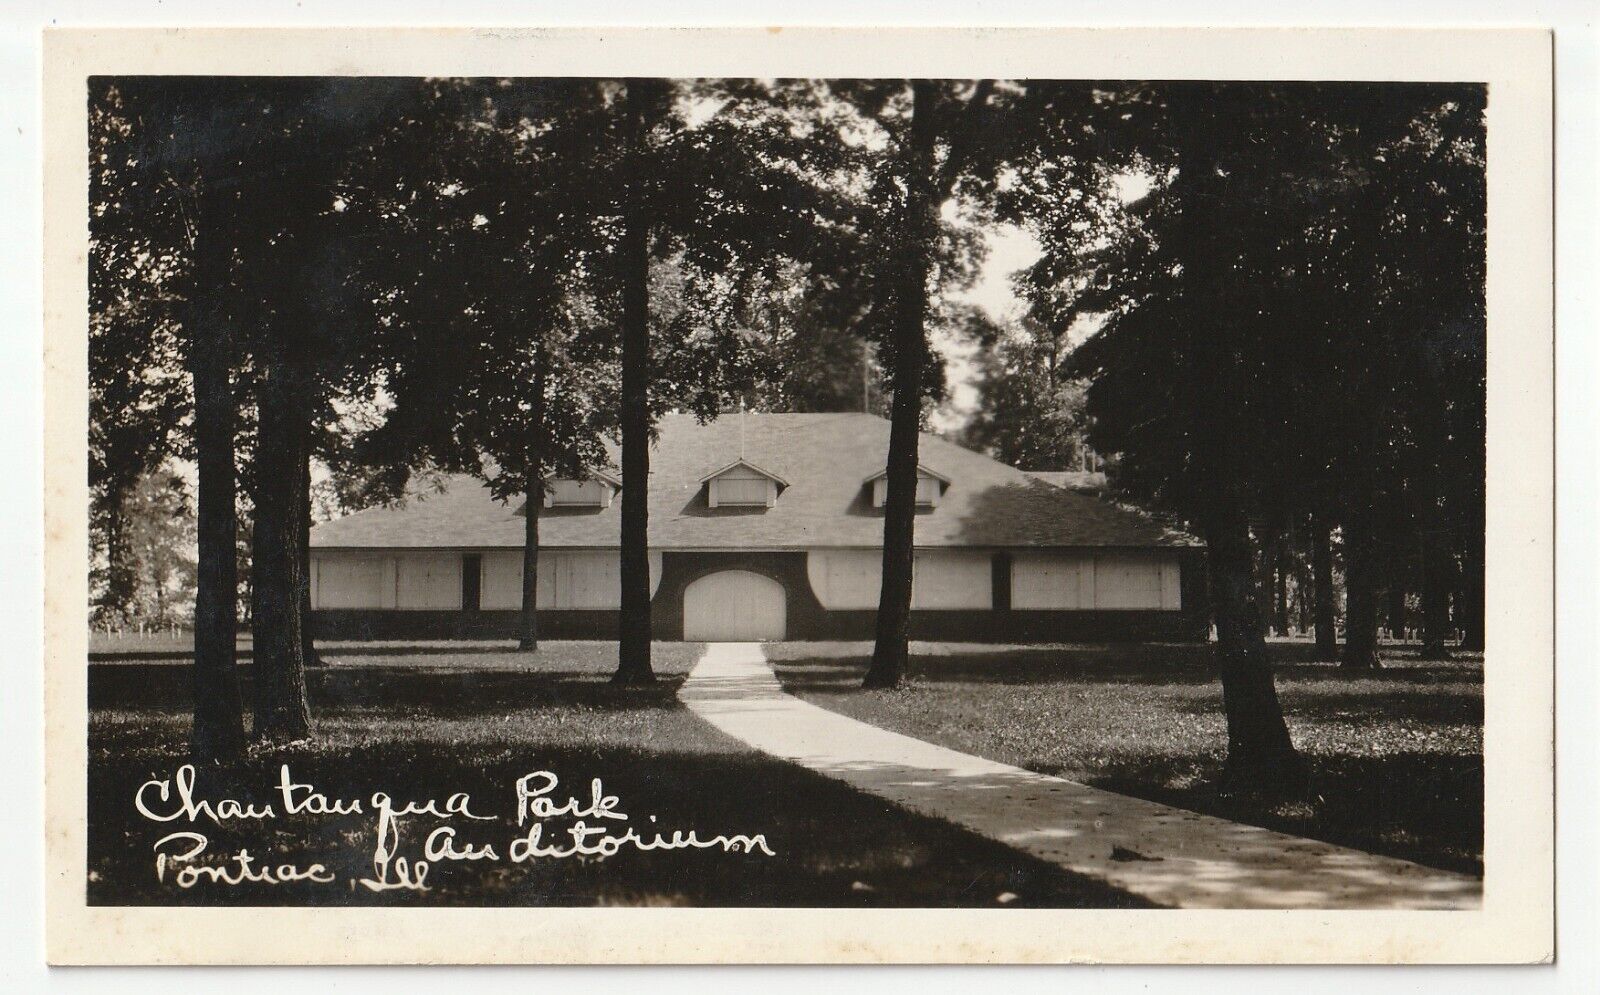 Pontiac, Illinois - Chautauqua Park Auditorium - Vintage rppc